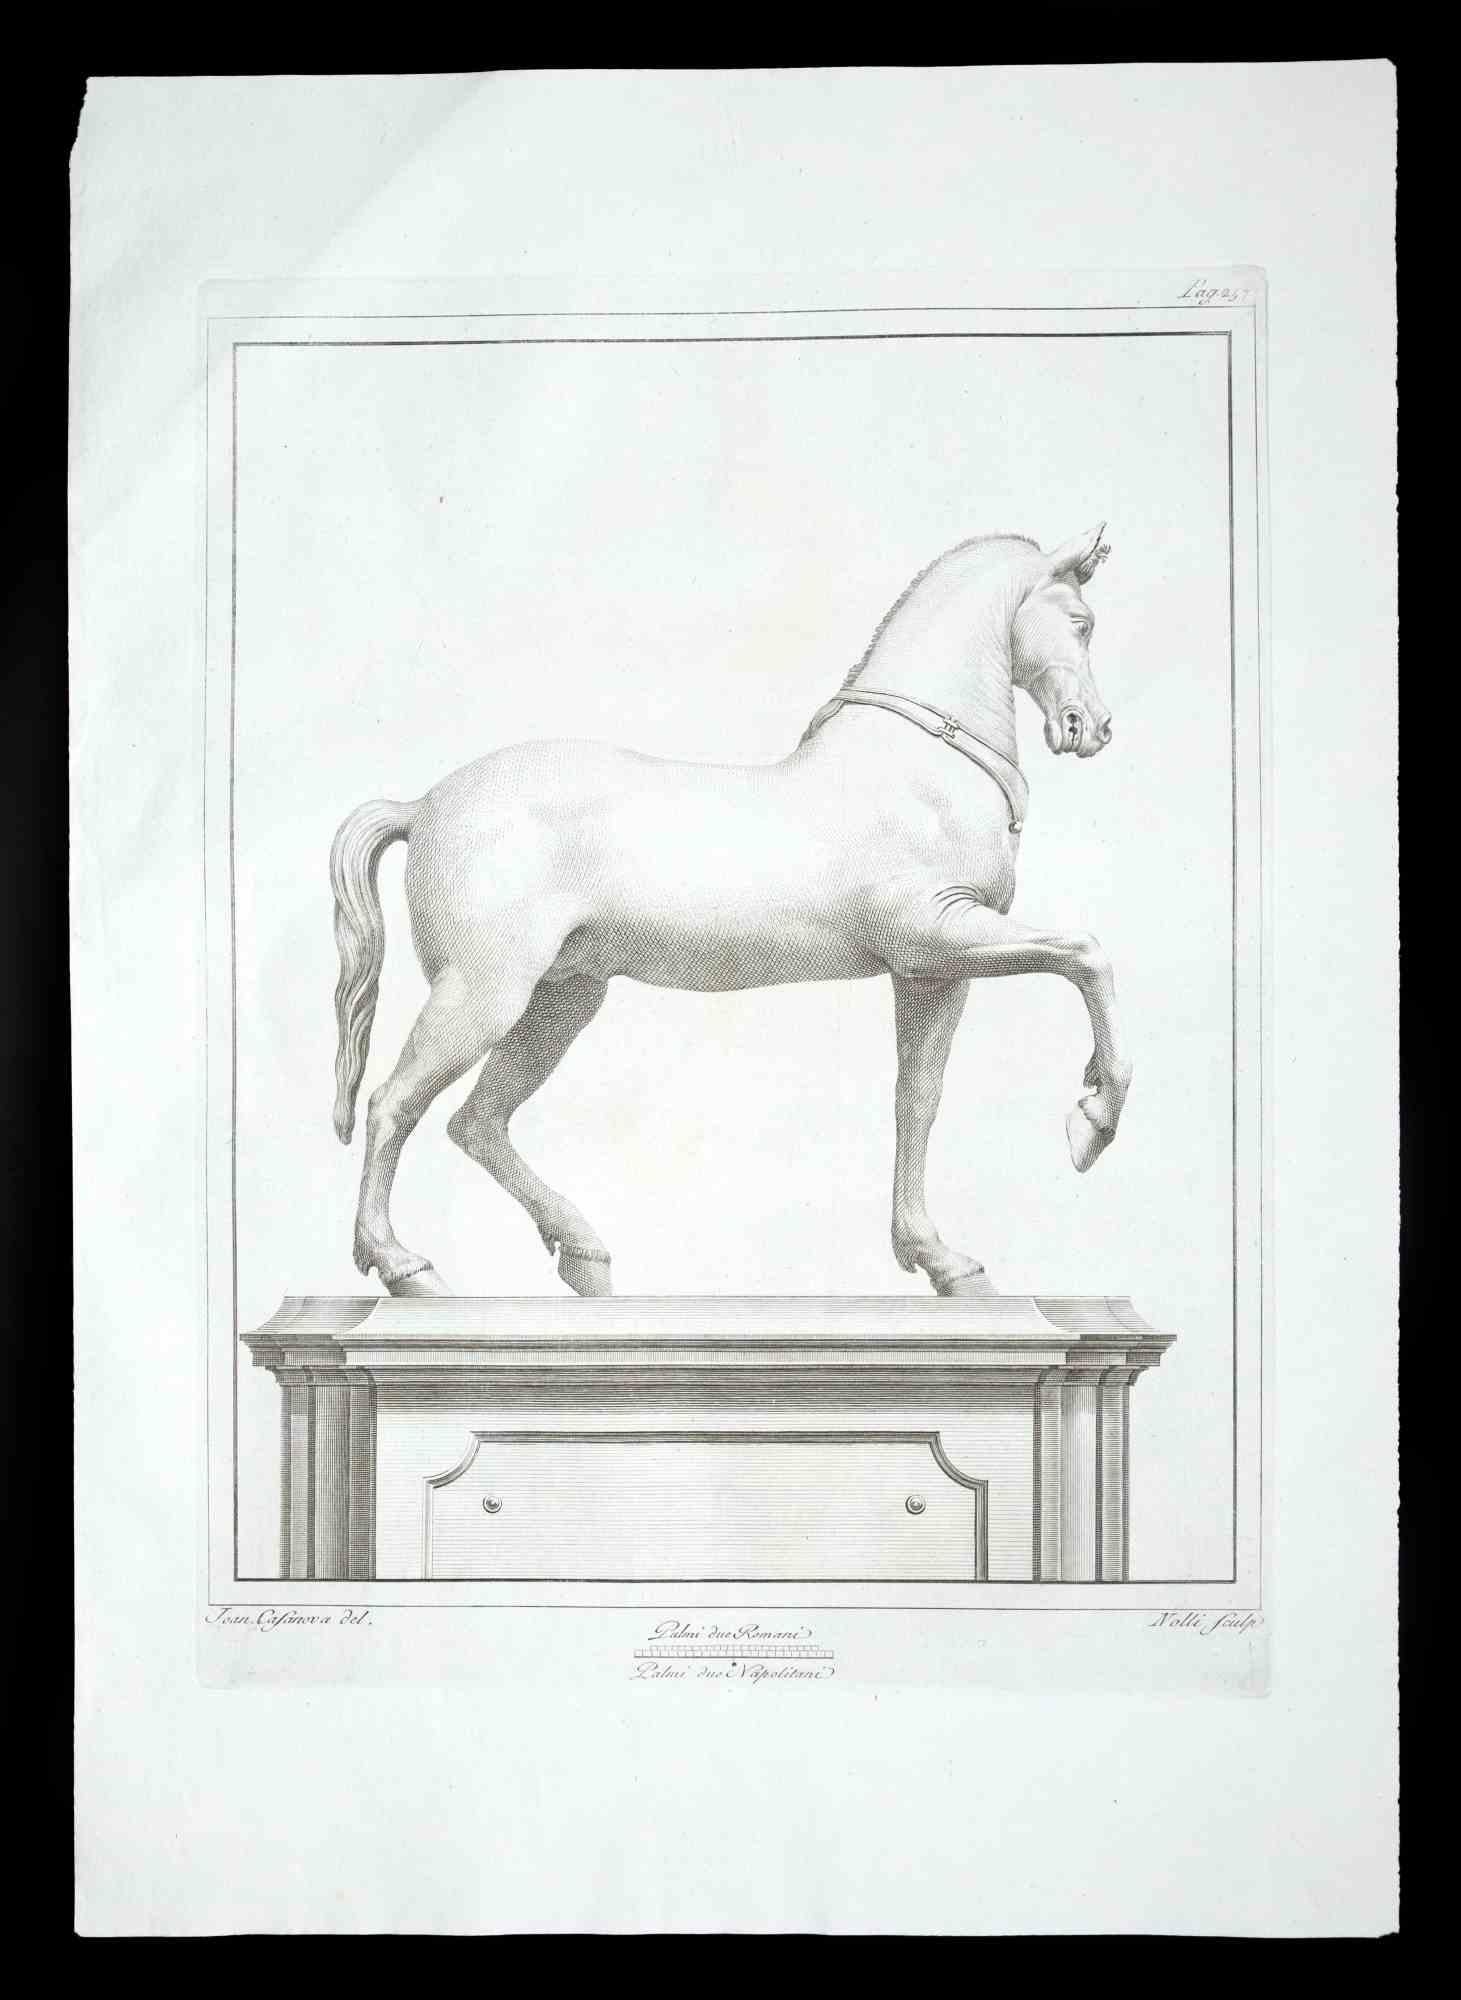 Antike römische Statue eines Pferdes, aus der Serie "Antiquities of Herculaneum", ist eine Originalradierung auf Papier von Carol Nolli aus dem 18.

Signiert auf der Platte, unten rechts.

Guter Zustand bis auf einen kleinen Schnitt oben links.

Die